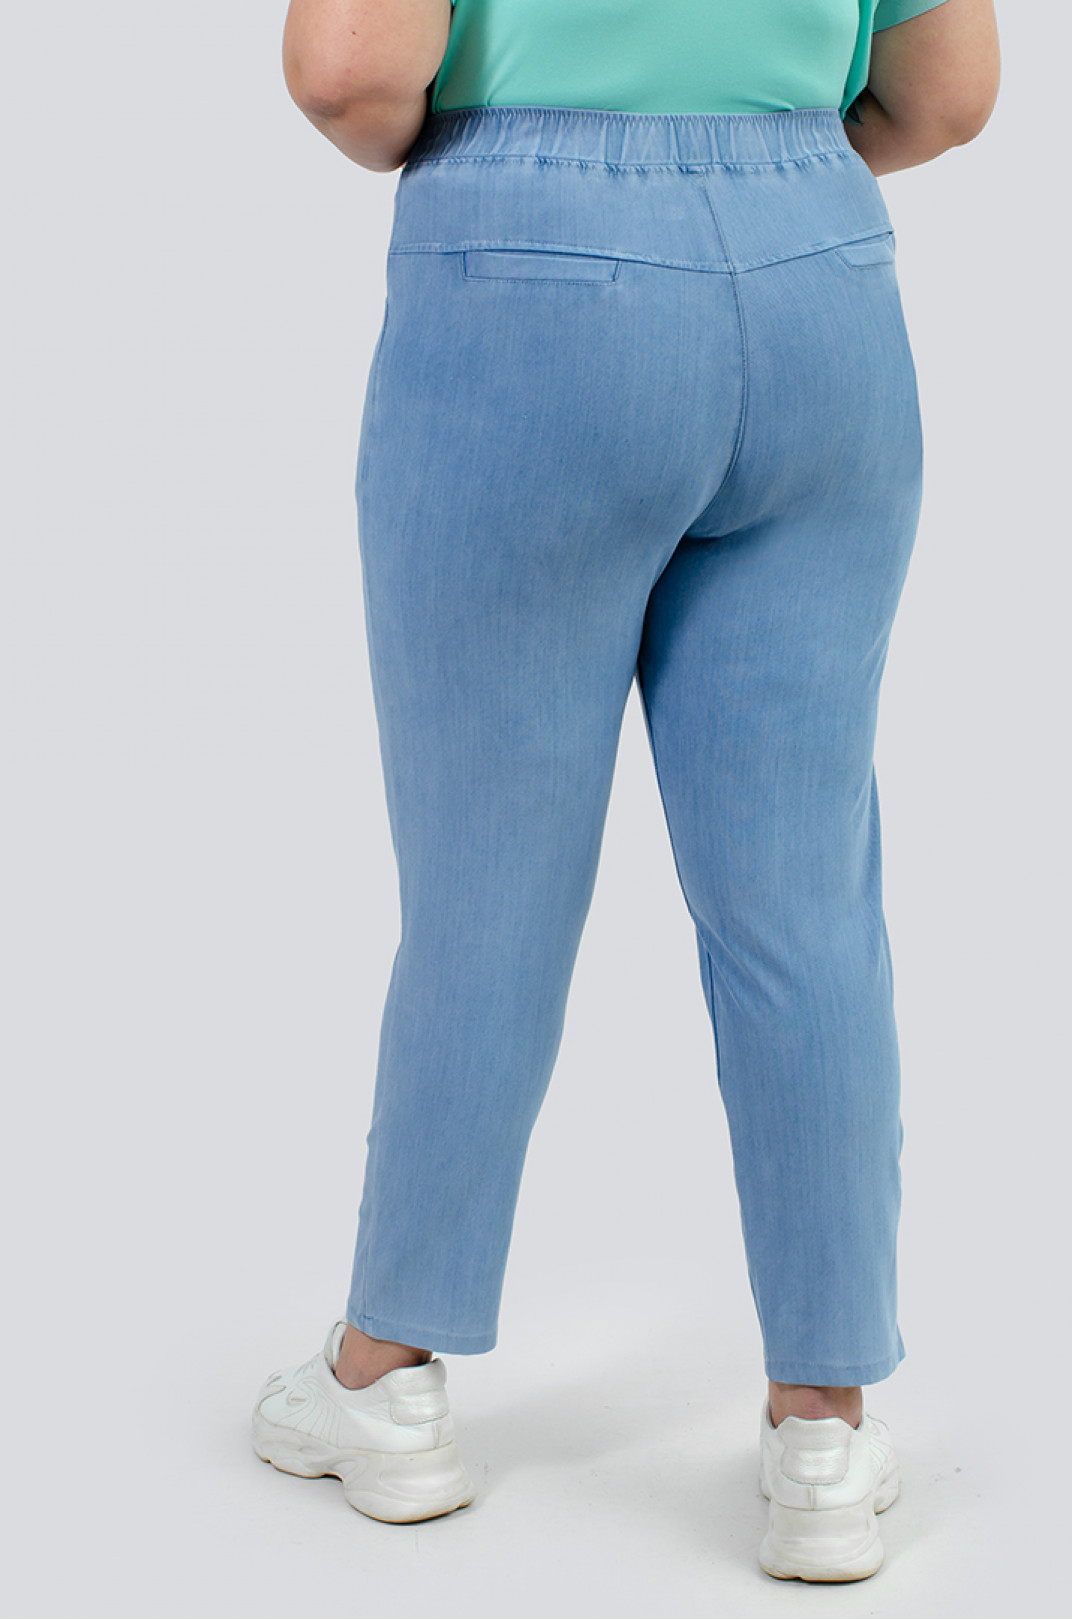 Легкі світло-блакитні джинси 7/8 великих розмірів